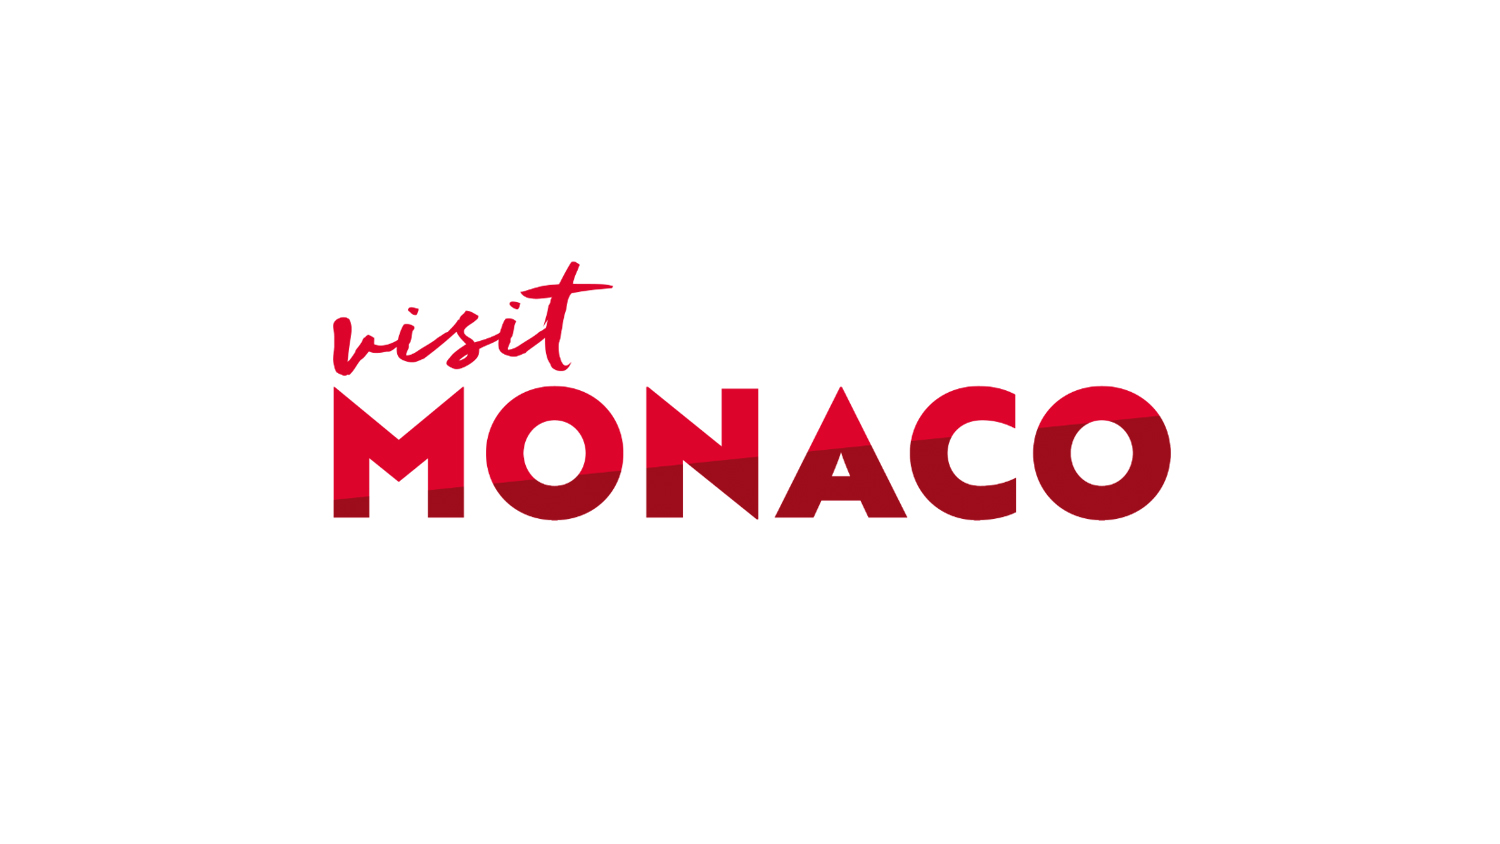 Visit Mónaco